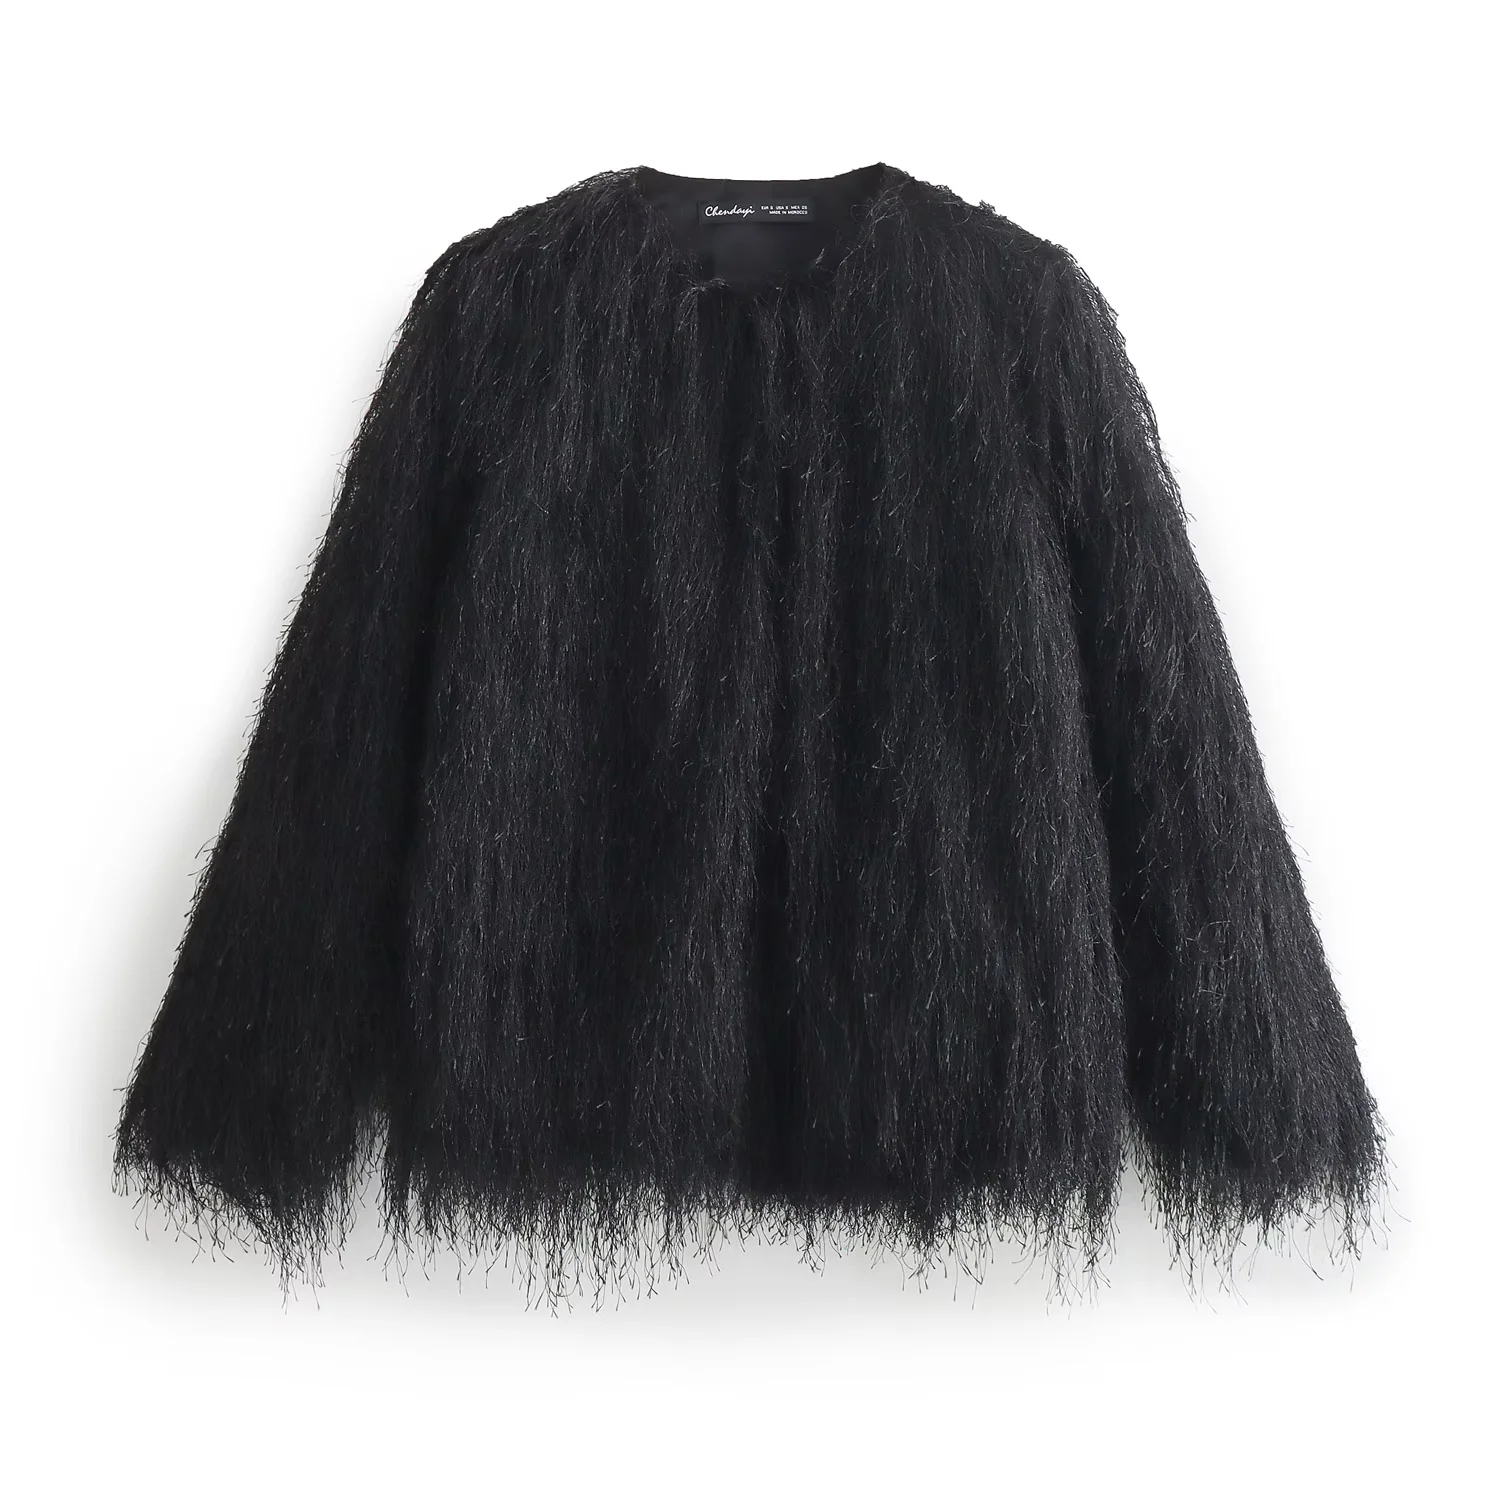 Fashion Black Fur Coat,Coat-Jacket